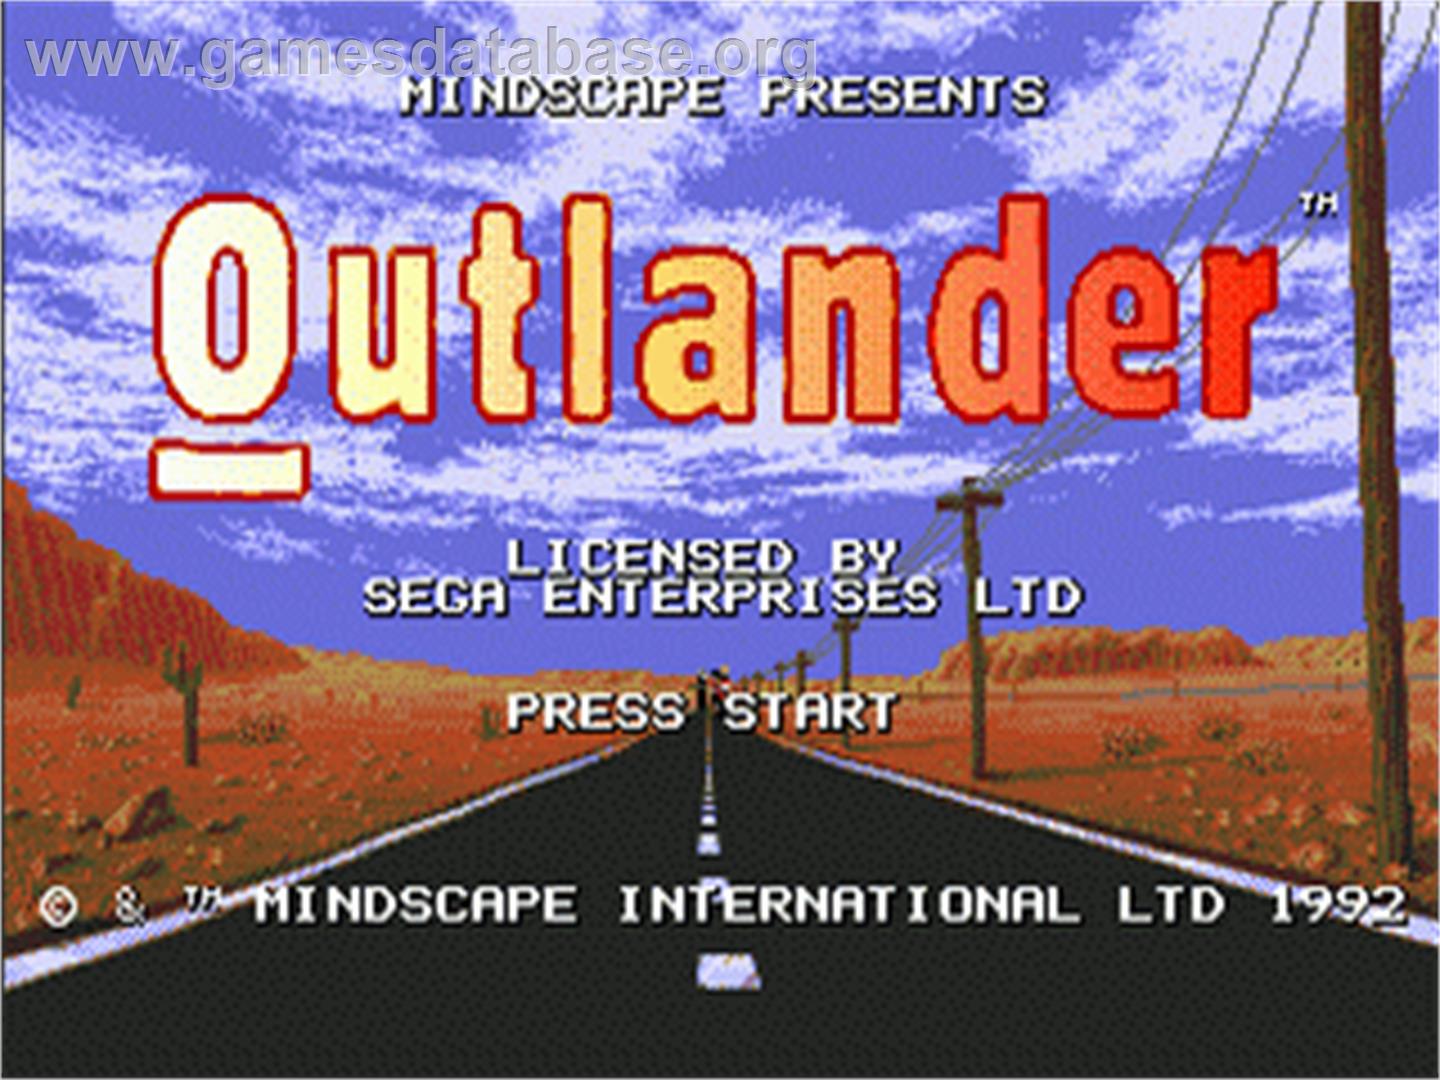 Outlander - Sega Genesis - Artwork - Title Screen